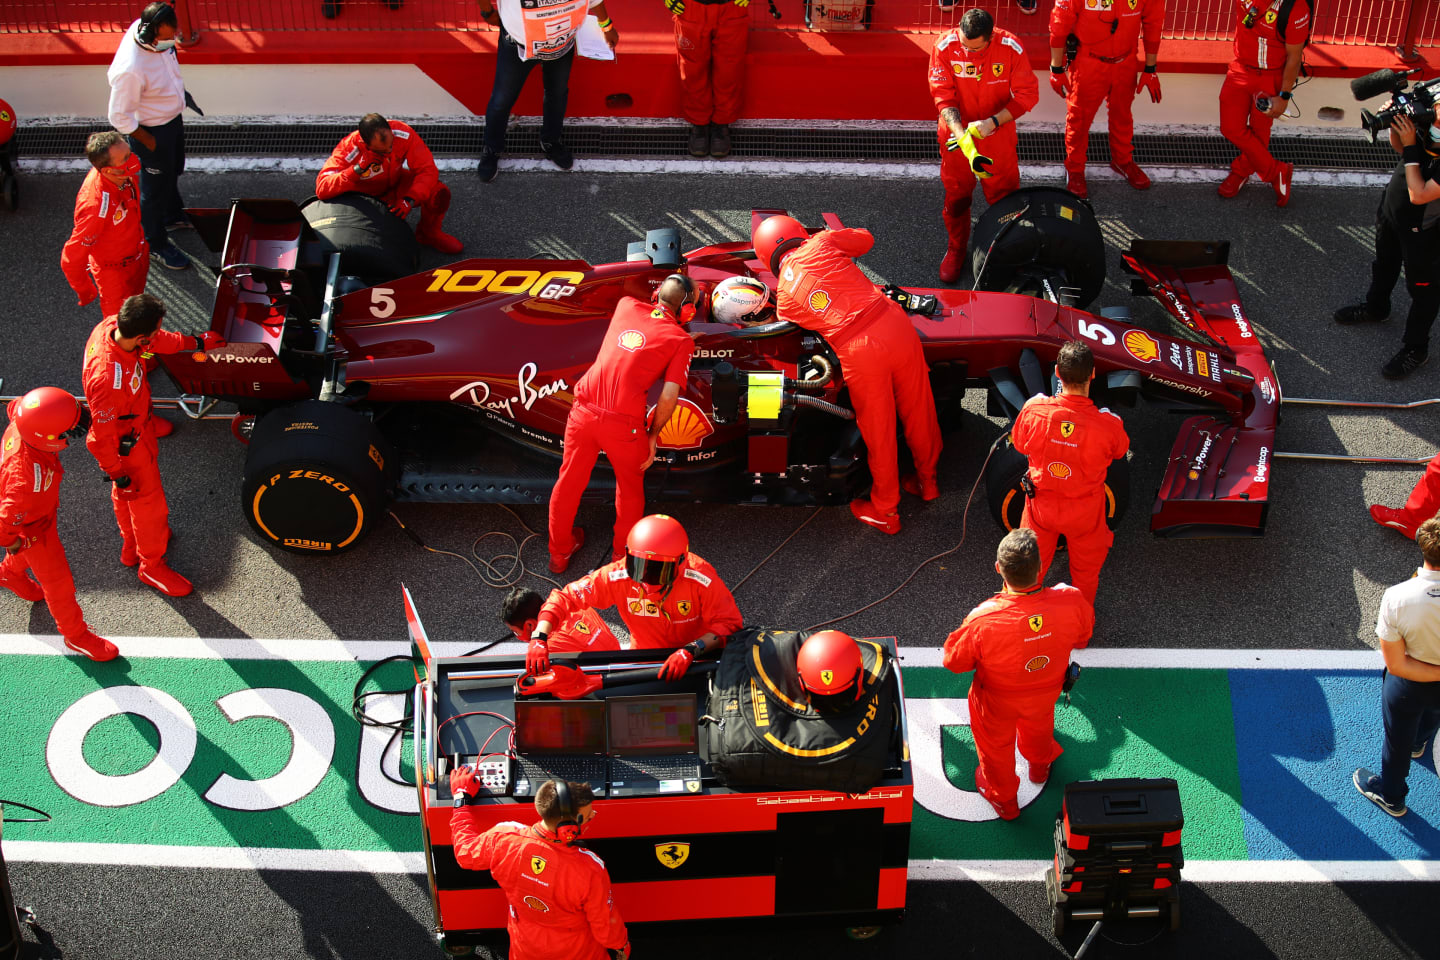 SCARPERIA, ITALY - SEPTEMBER 13: Scuderia Ferrari team members work on the car of Sebastian Vettel